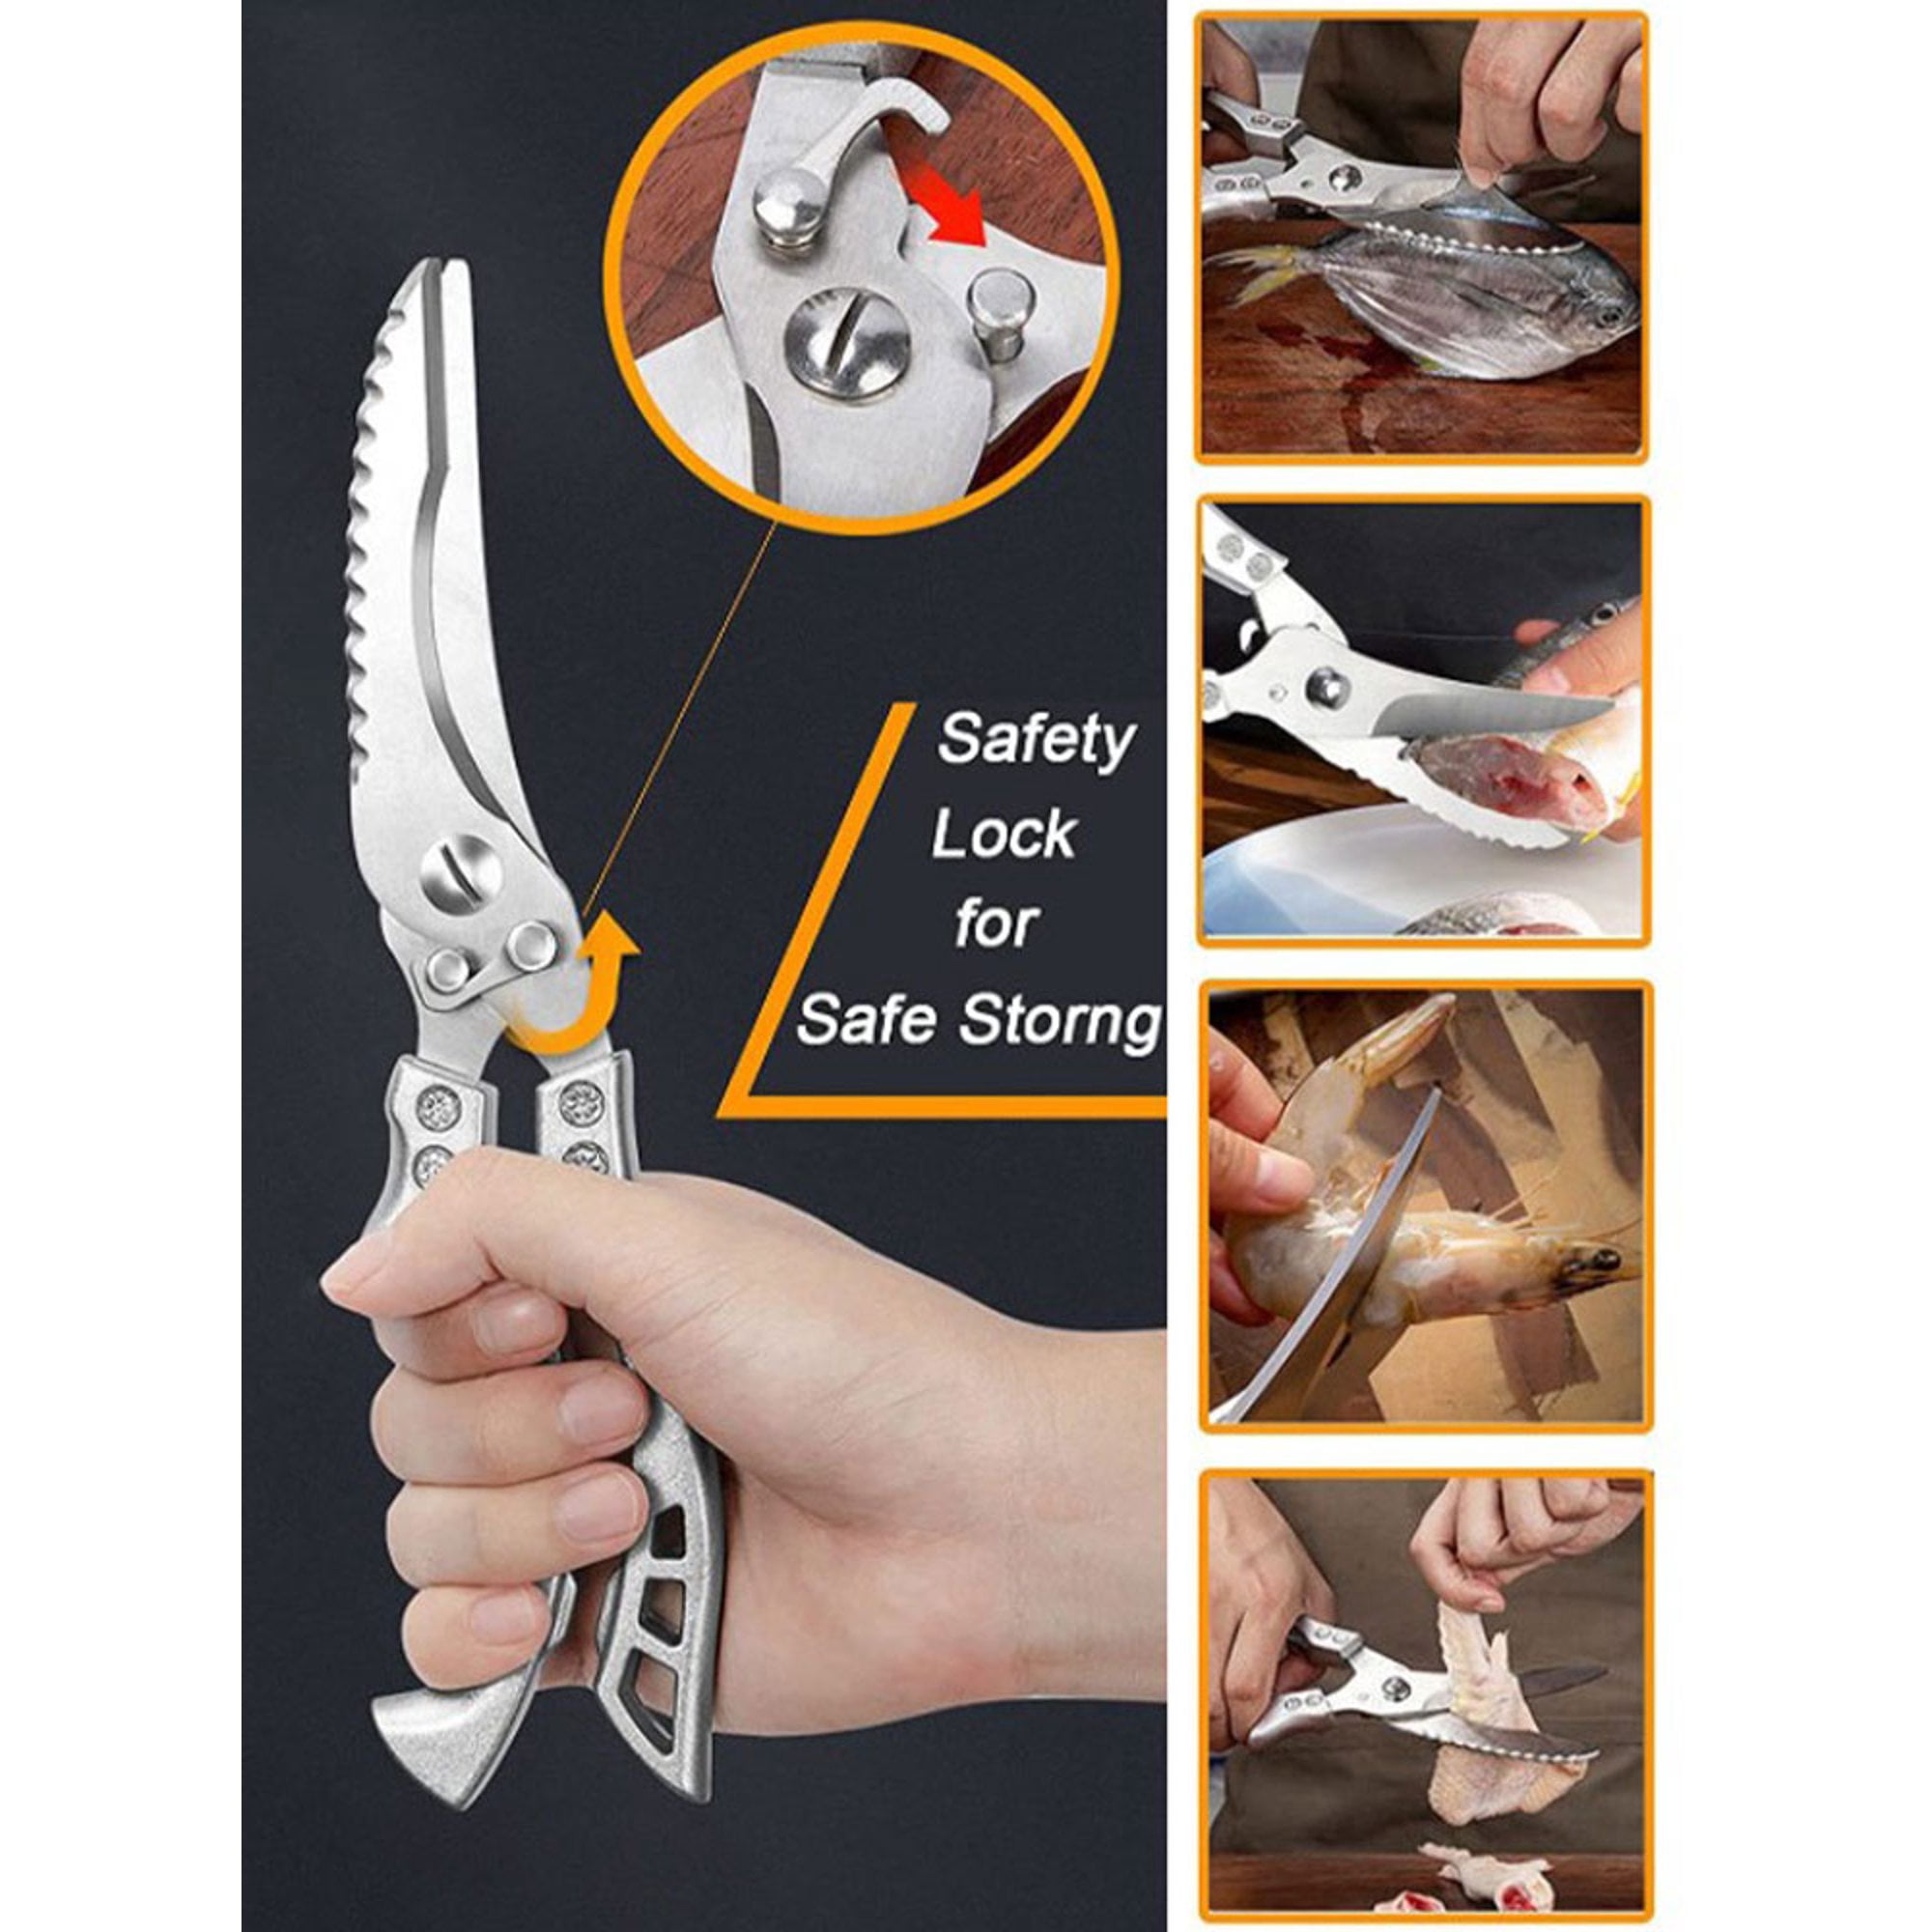 NEW HOT Kitchen Scissors, Ultra Sharp Heavy Duty Kitchen Shears